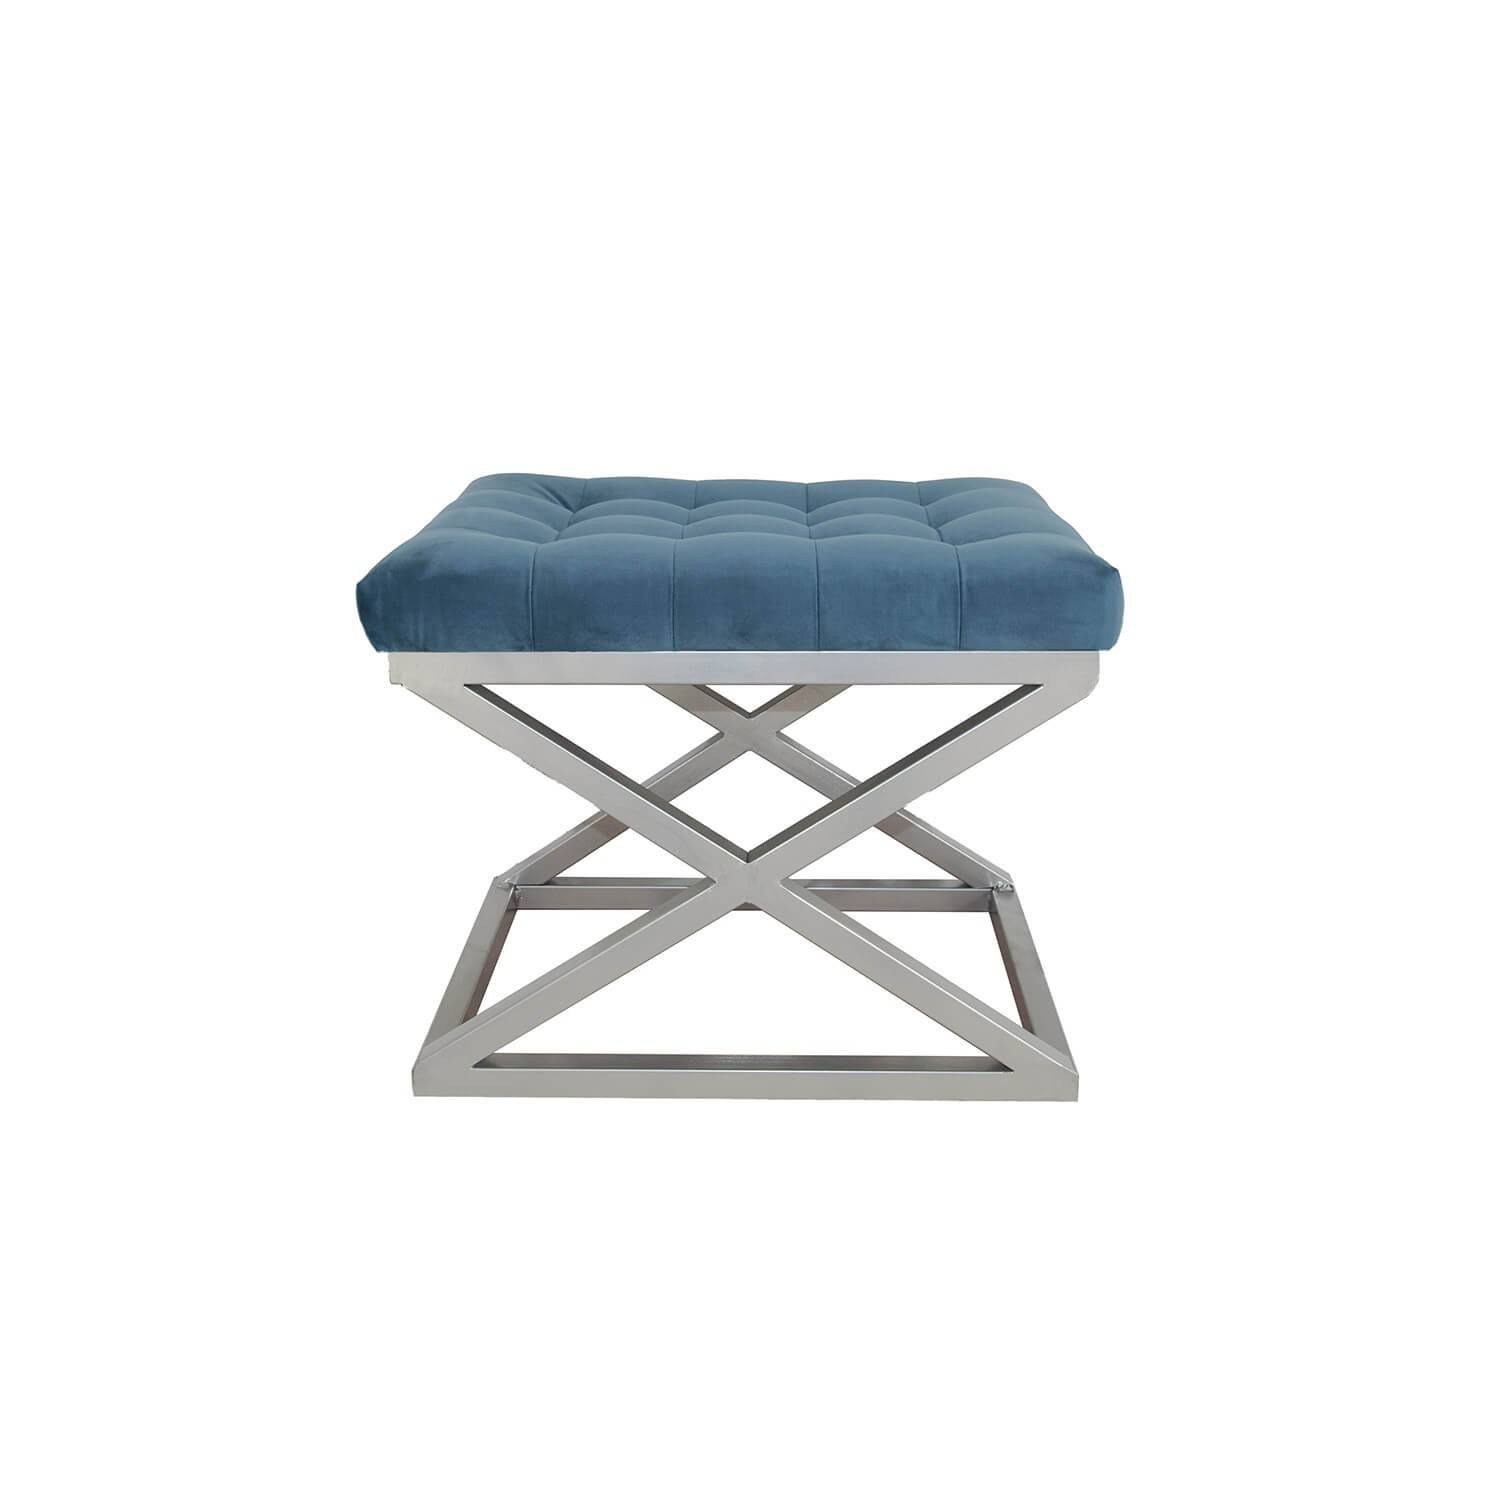 Taburete Ulad de metal plateado y terciopelo azul, asiento tapizado